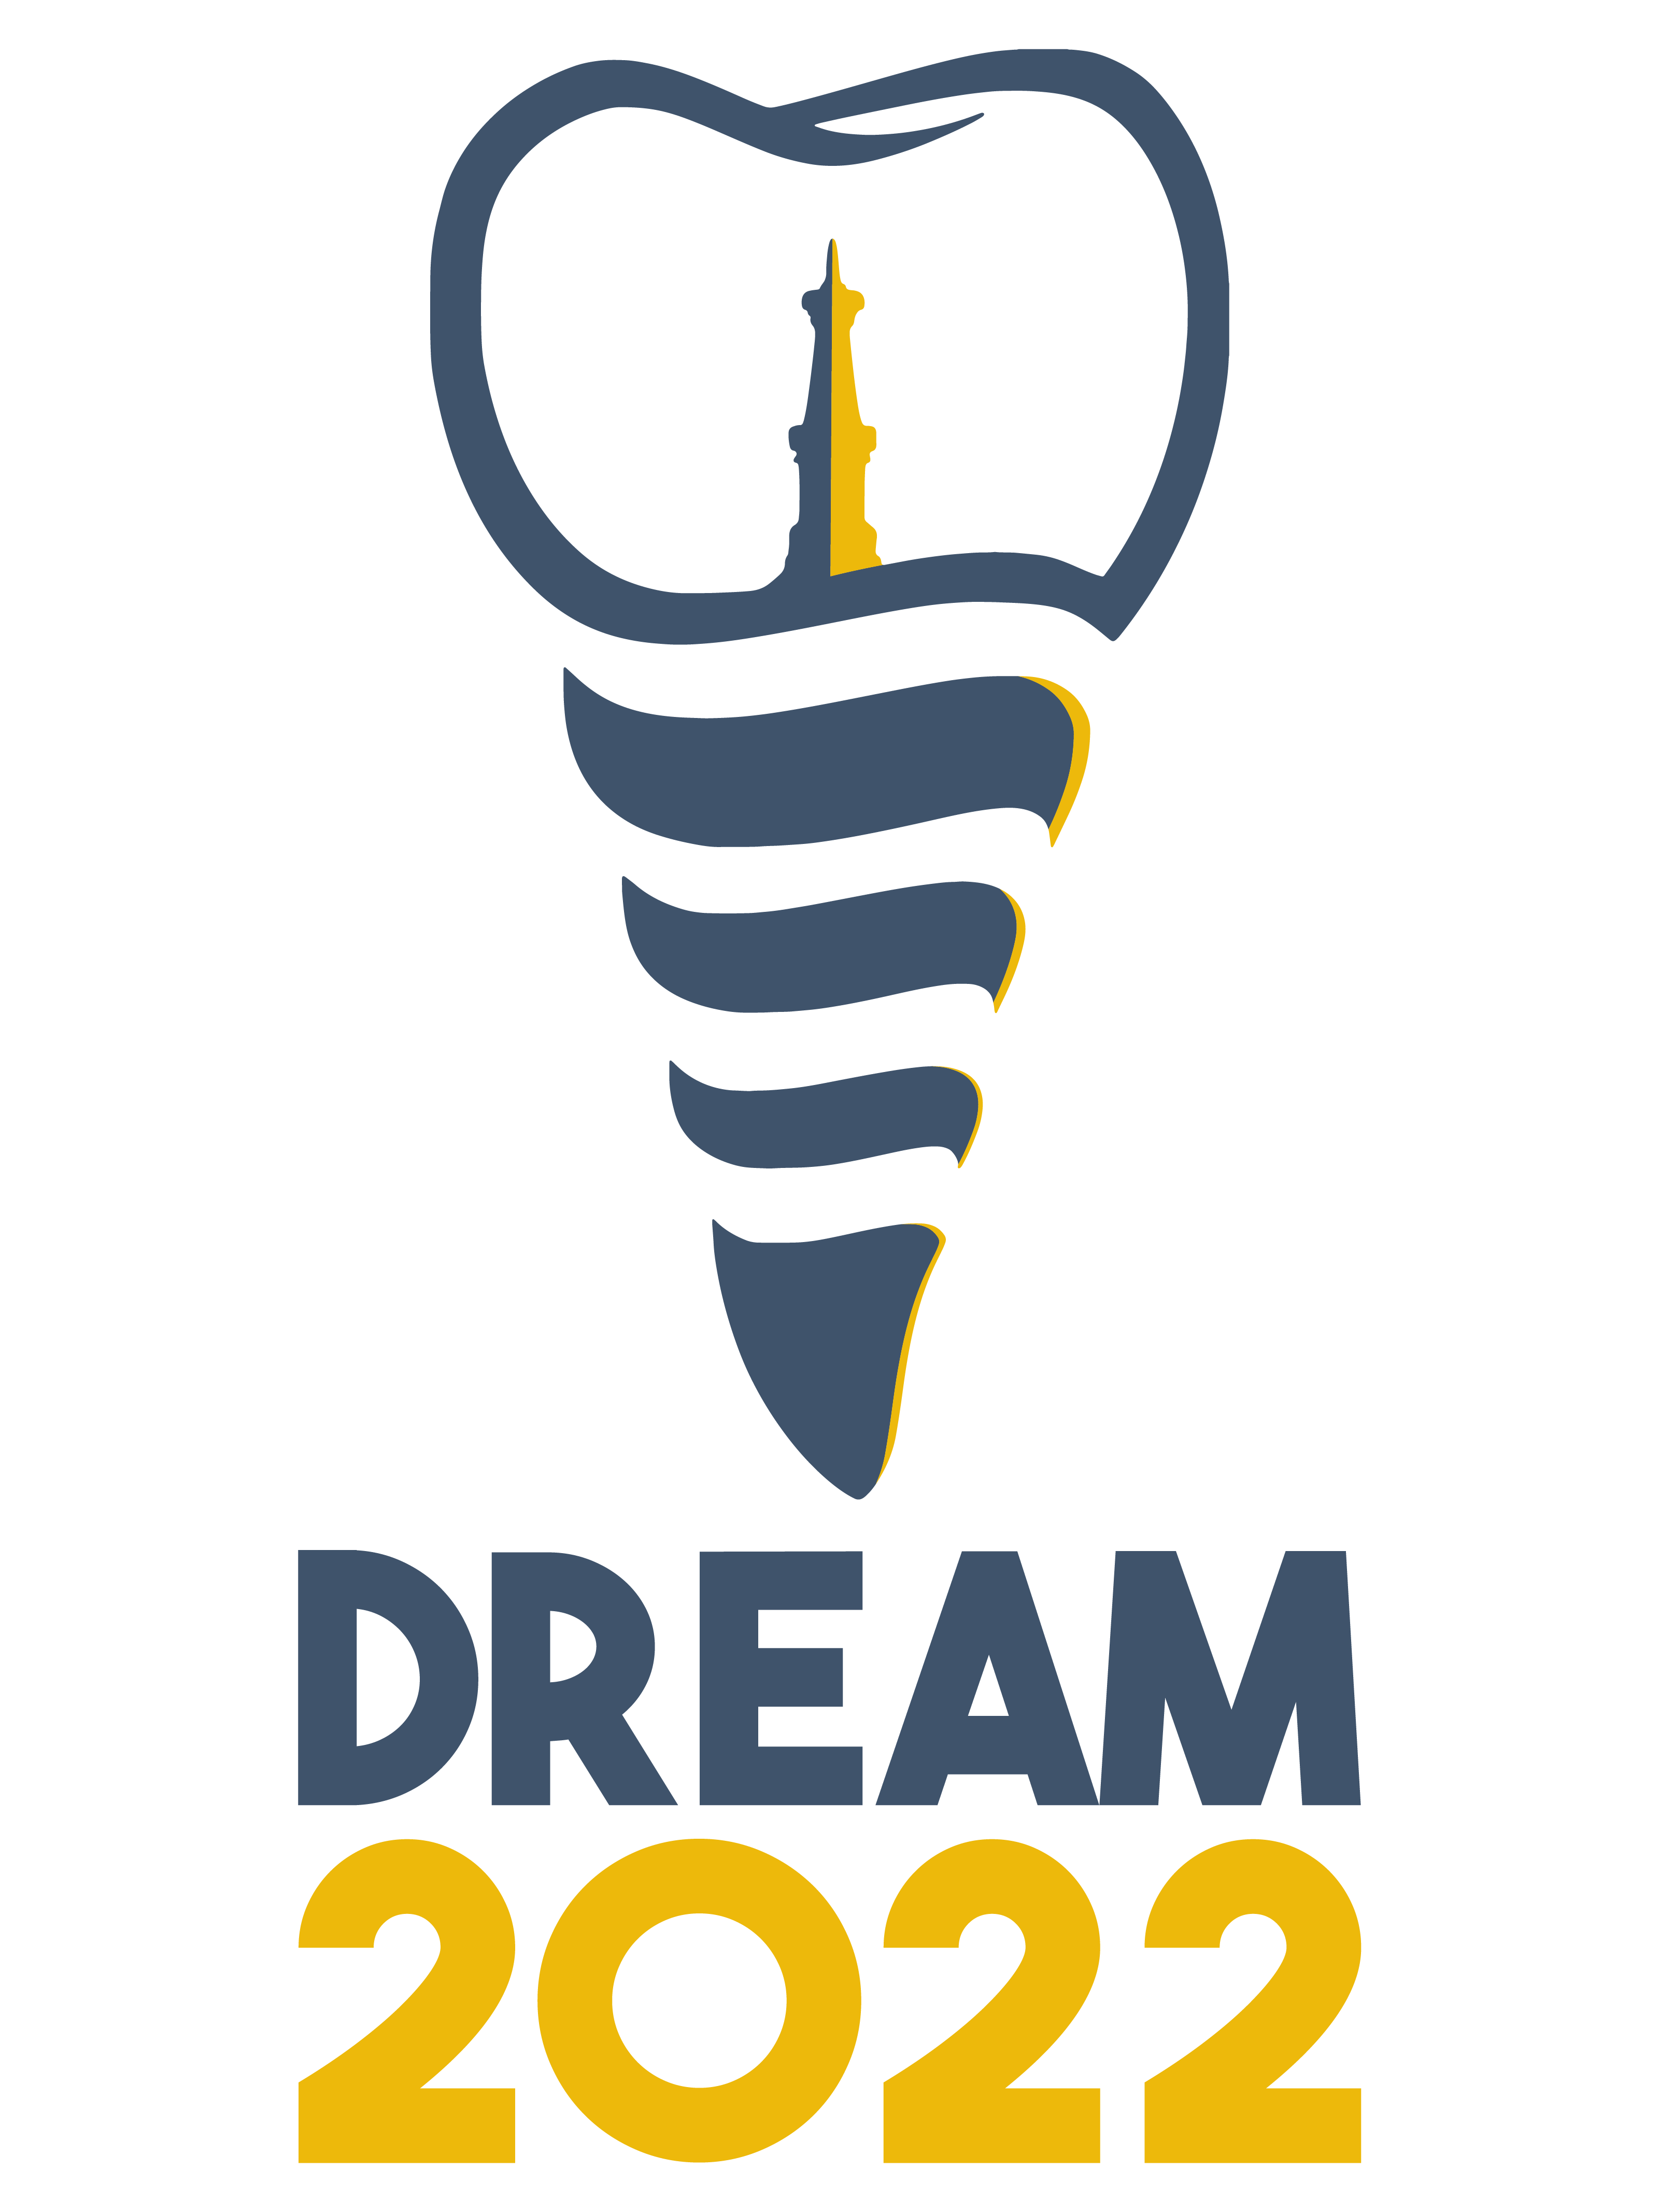 DREAM – ICoSI 2022